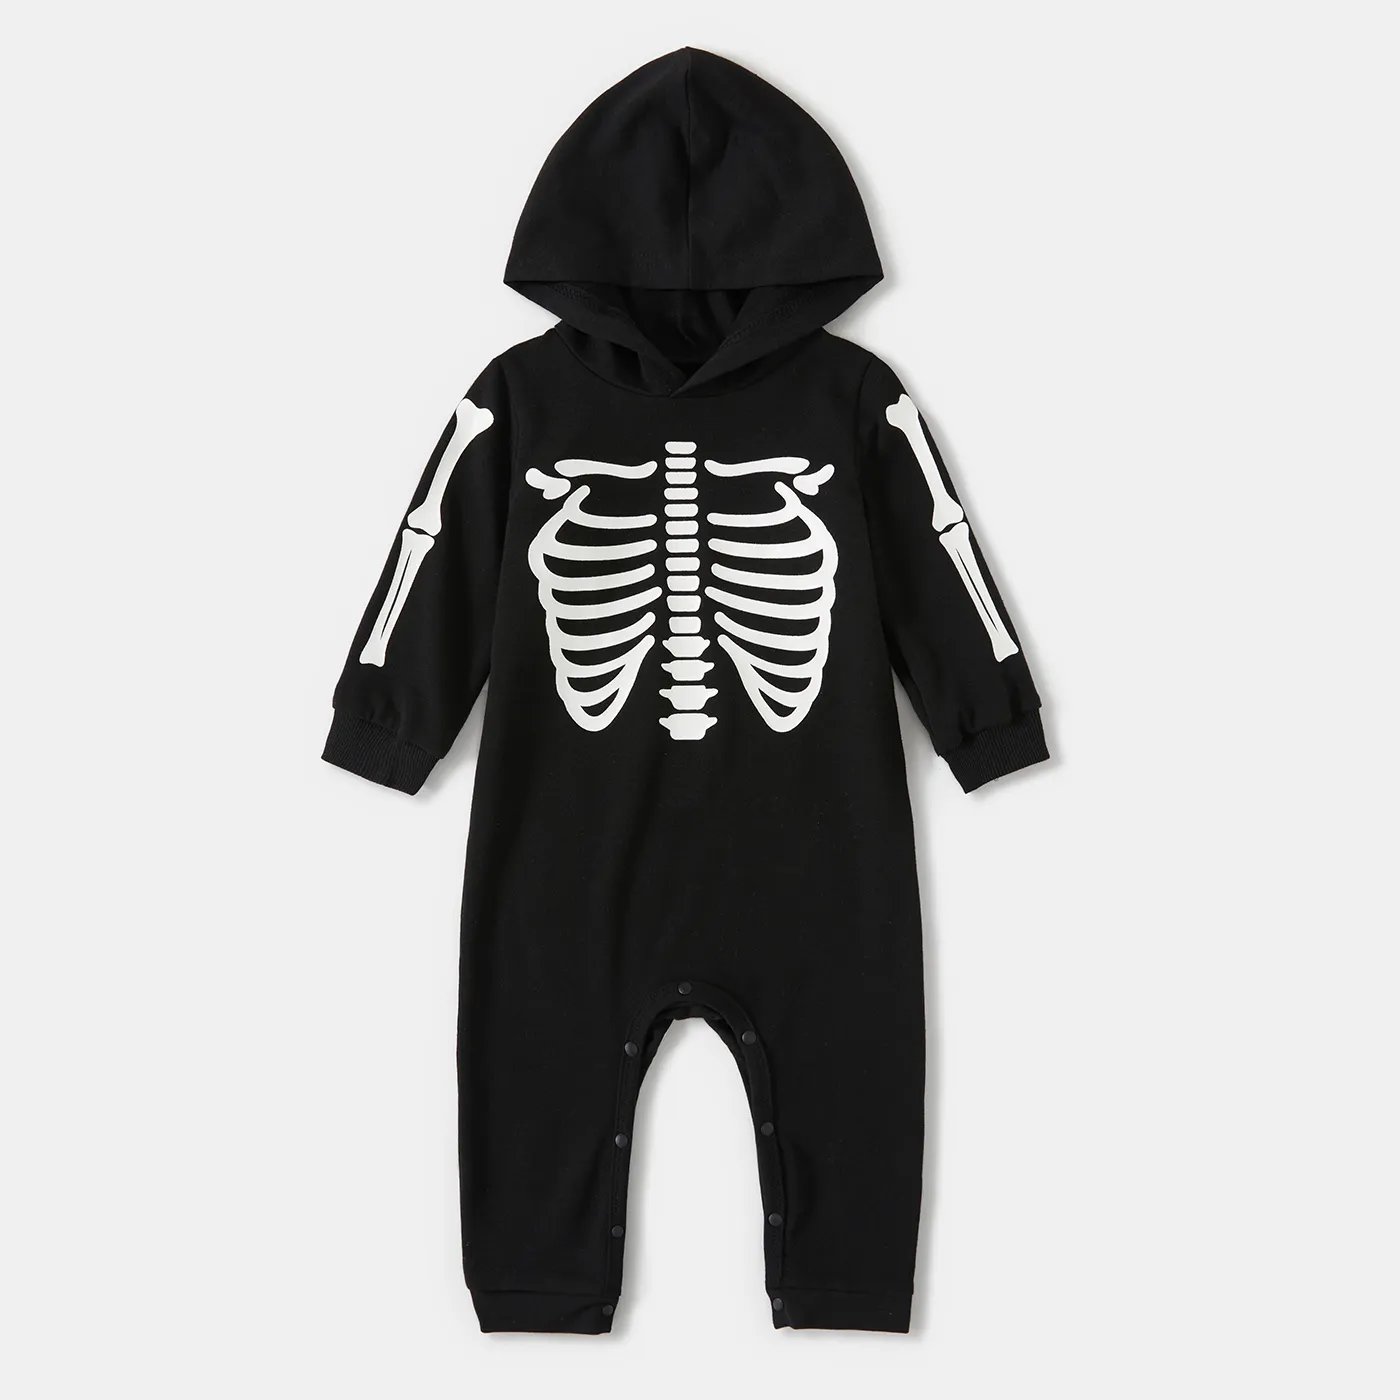 Halloween Glow In The Dark Skeleton Print Black Family Matching Long-sleeve Hoodies